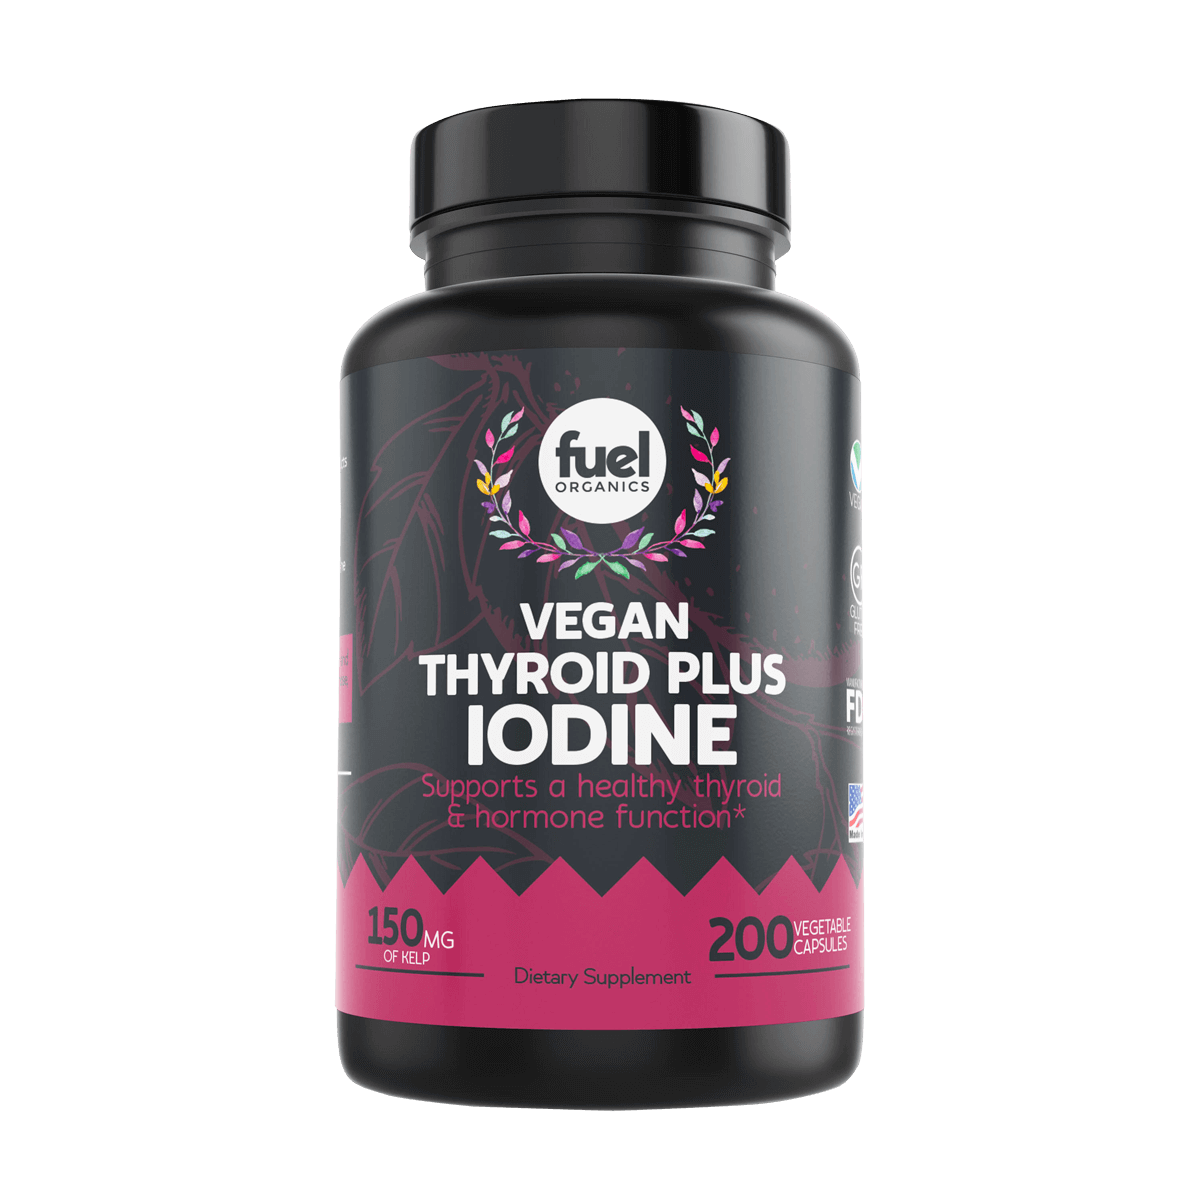 Vegan Iodine